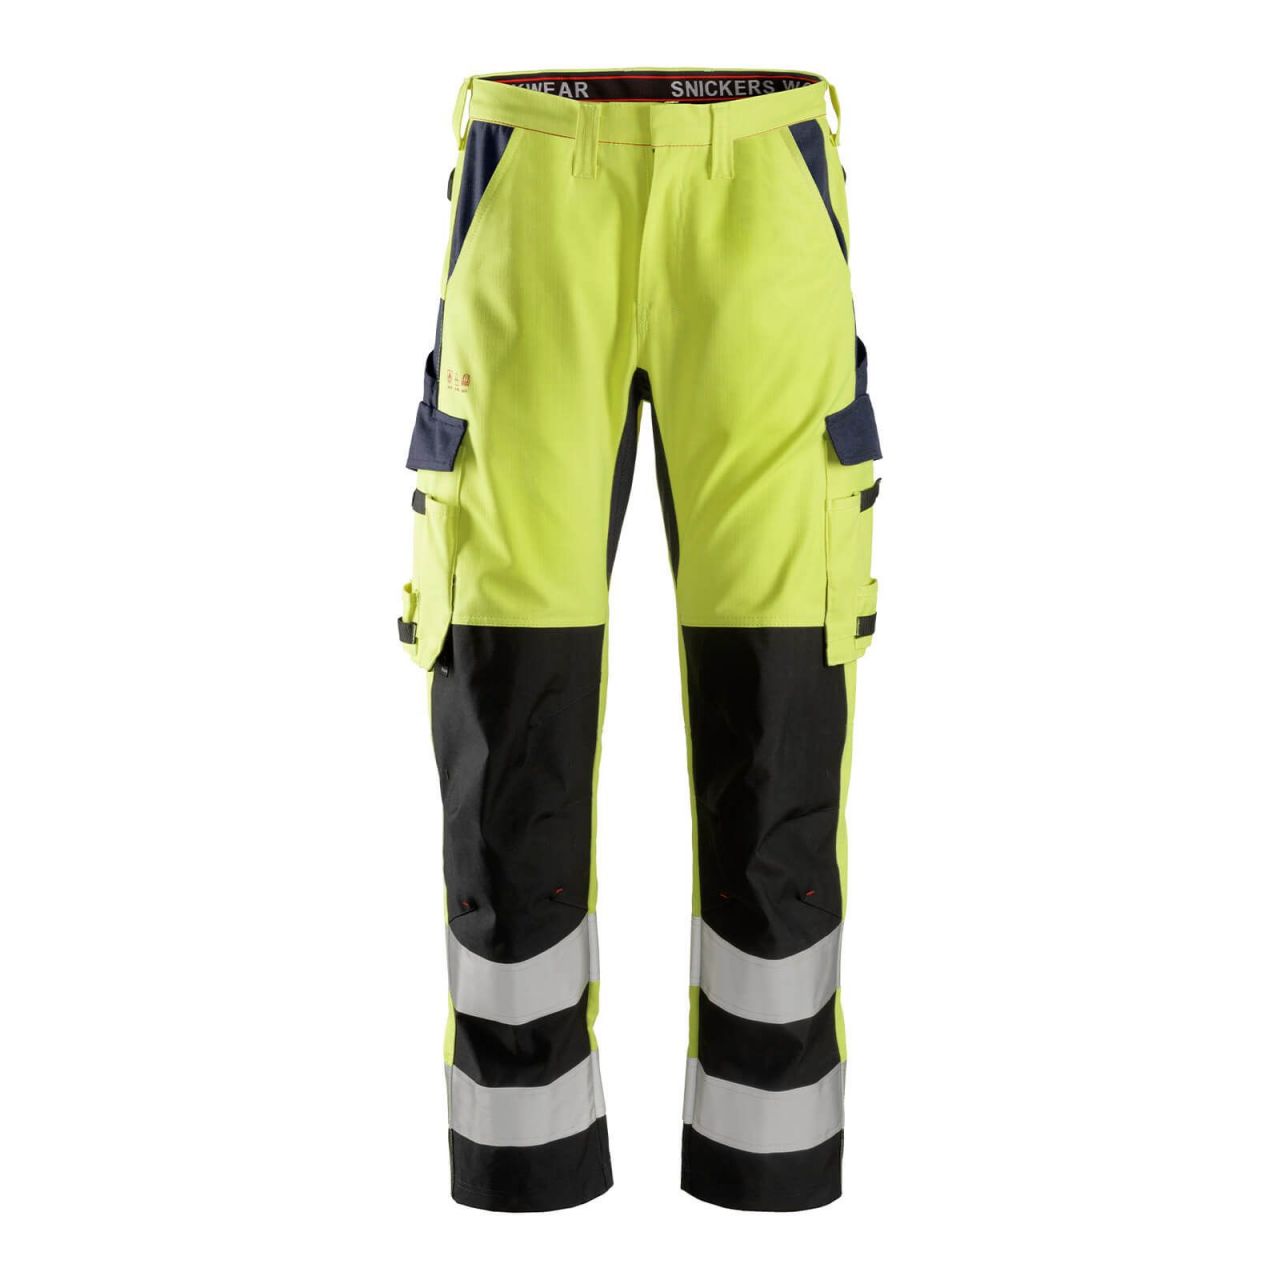 6364 Pantalones largos de trabajo de alta visibilidad clase 2 con espinilla reforzada ProtecWork amarillo-azul marino talla 88